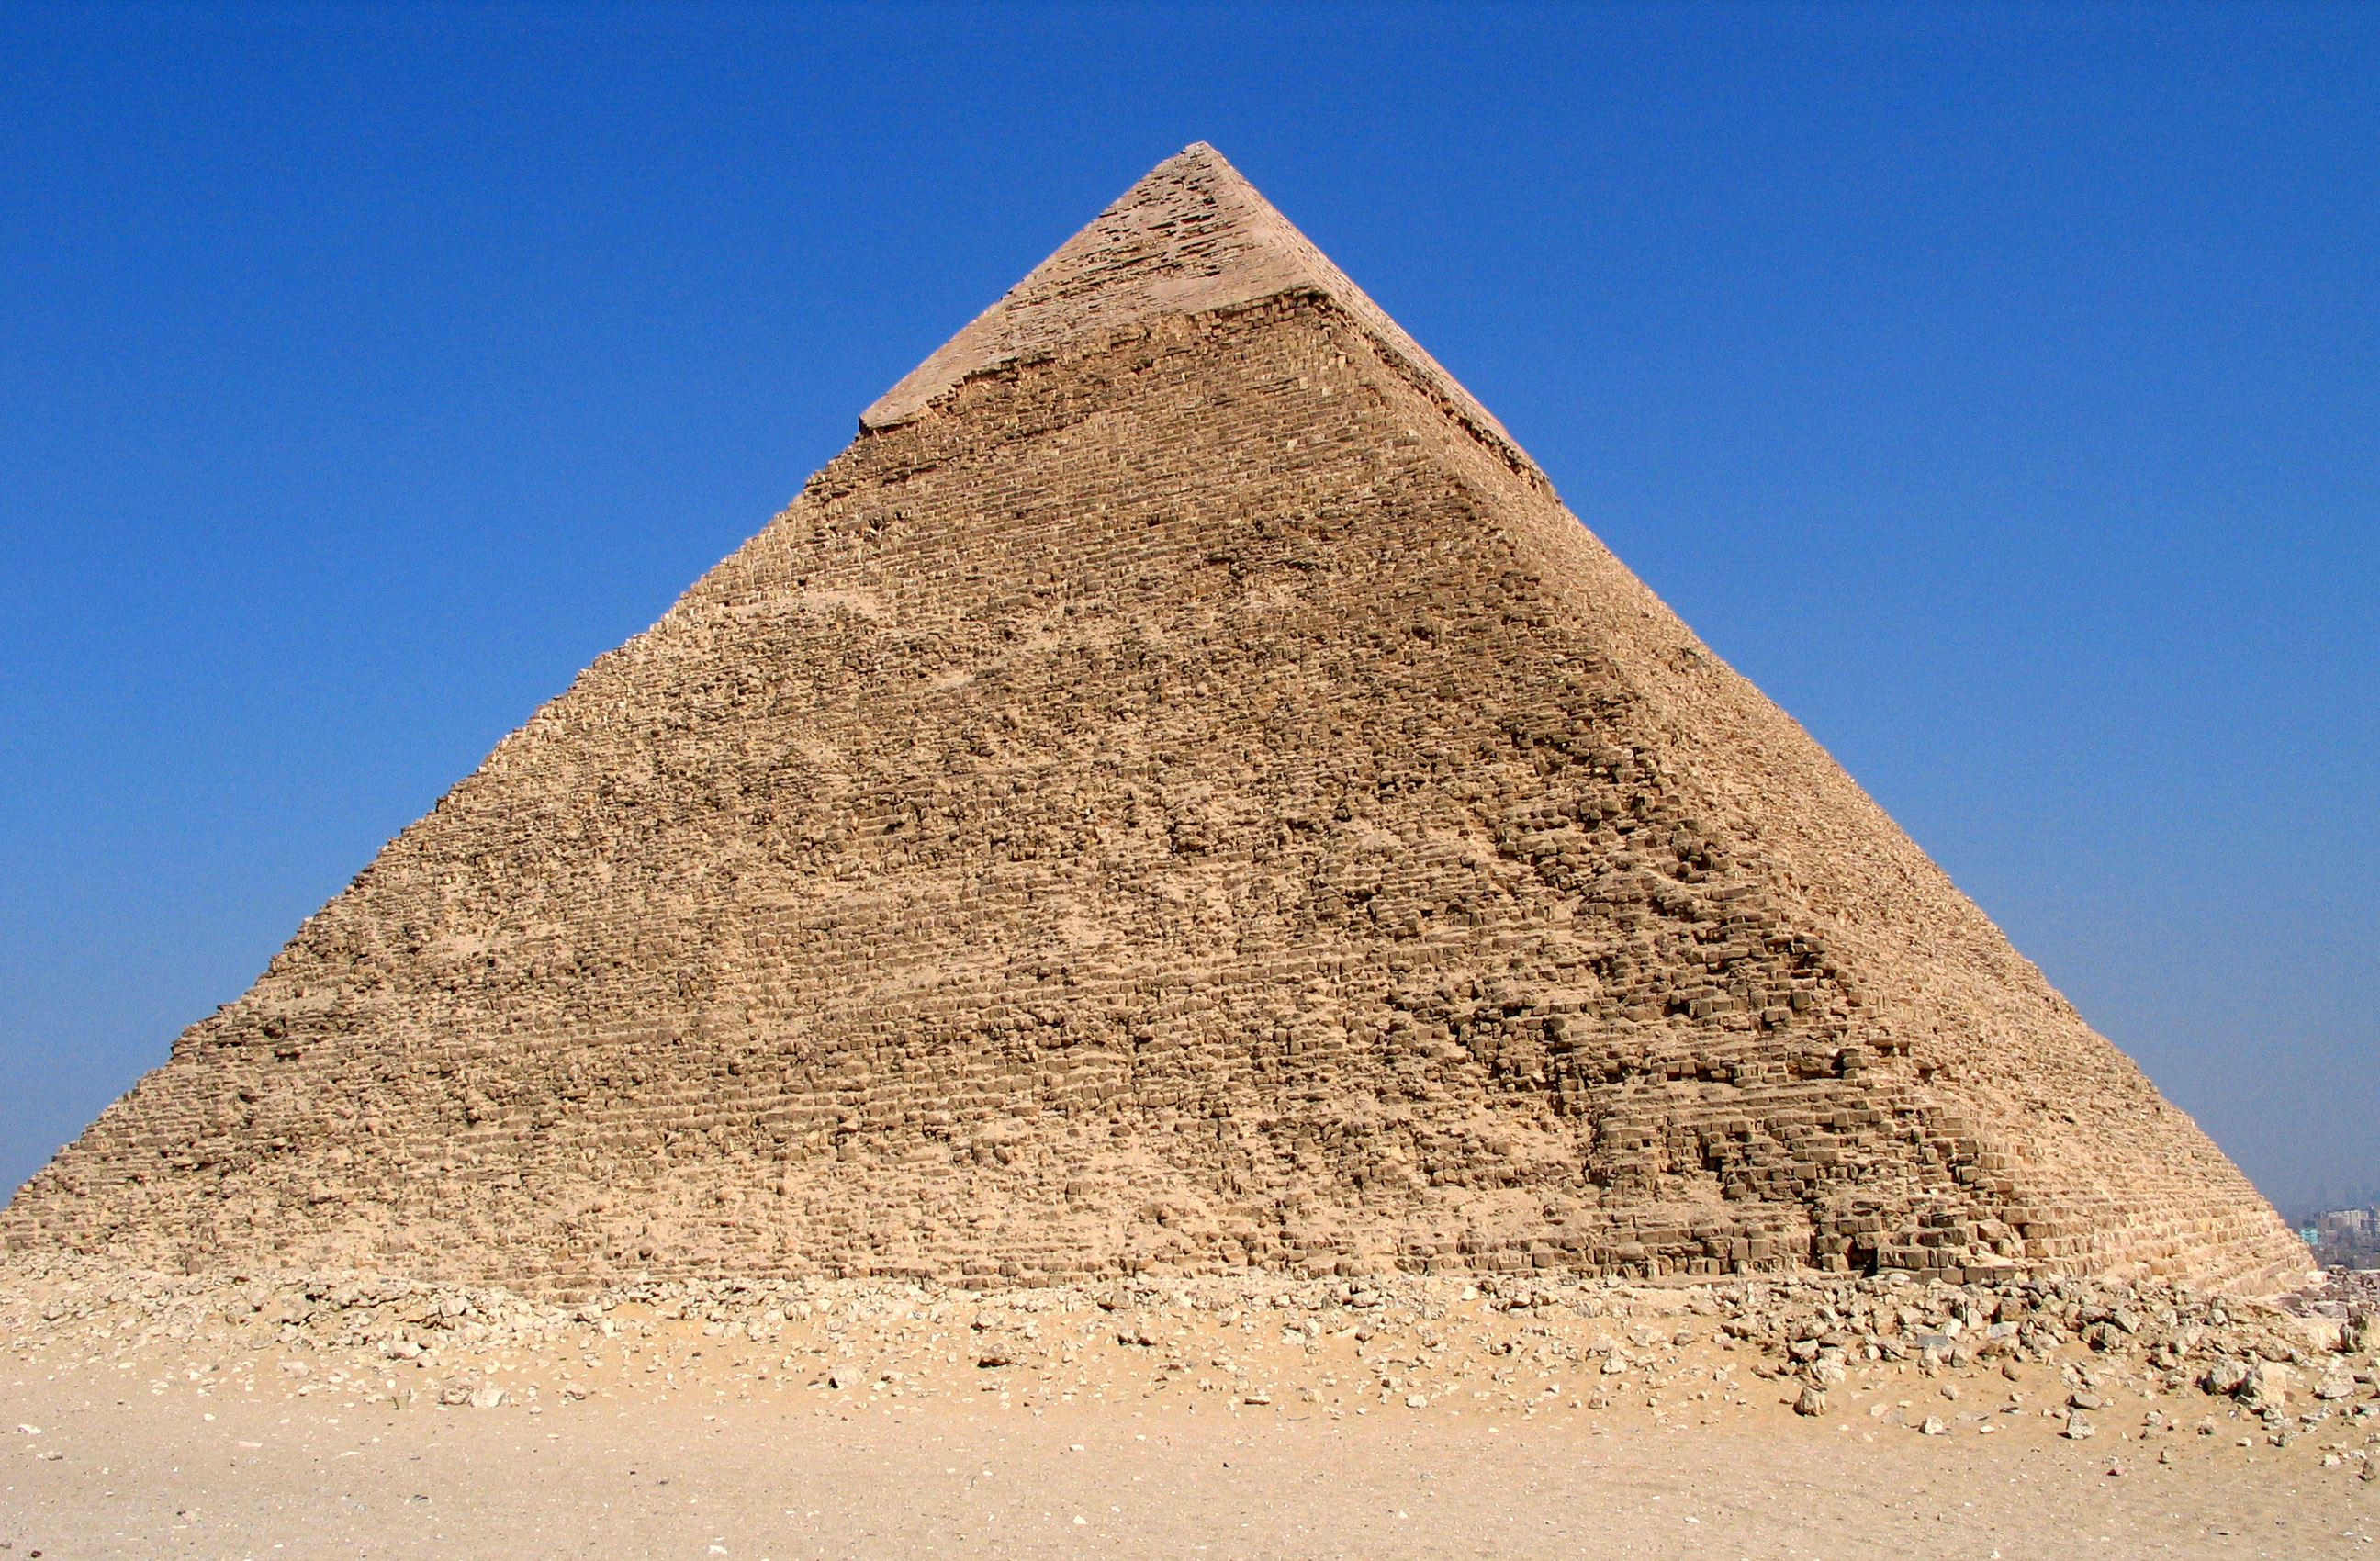 Misr piramidalari haqida. Пирамида Хеопса. Пирамида Хефрена в Египте. Пирамида Хуфу Египет. Пирамида Хеопса (Хуфу).